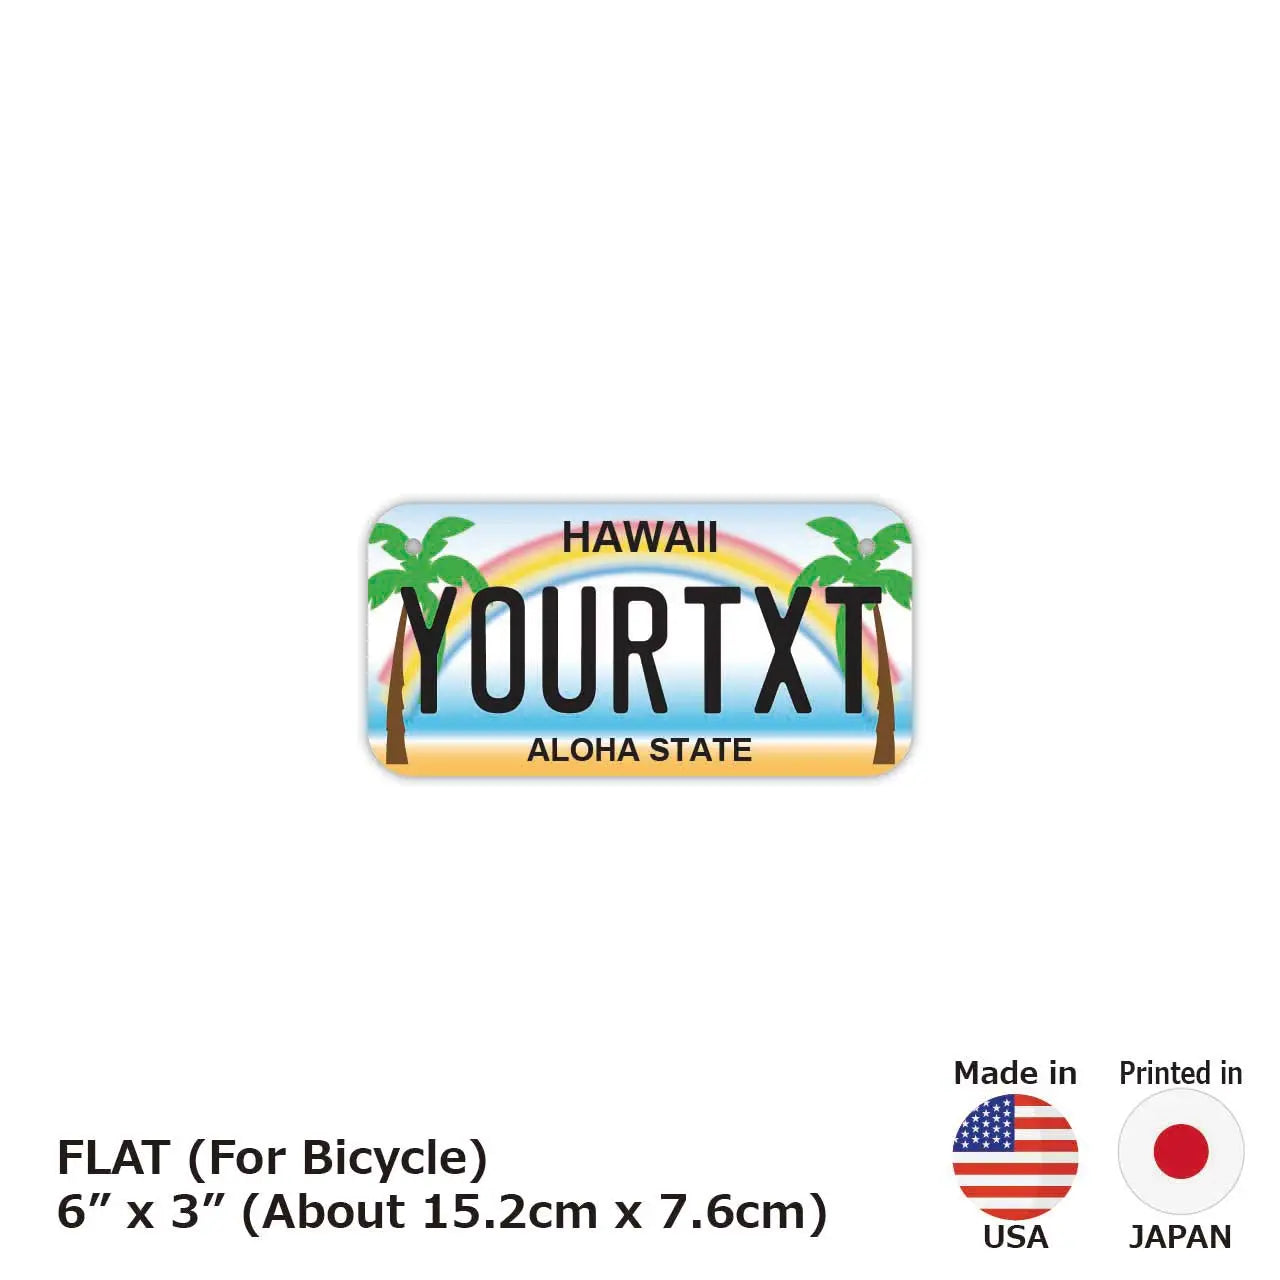 【小・自転車用】ハワイ・ヤシの木/オリジナルアメリカナンバープレート PL8HERO